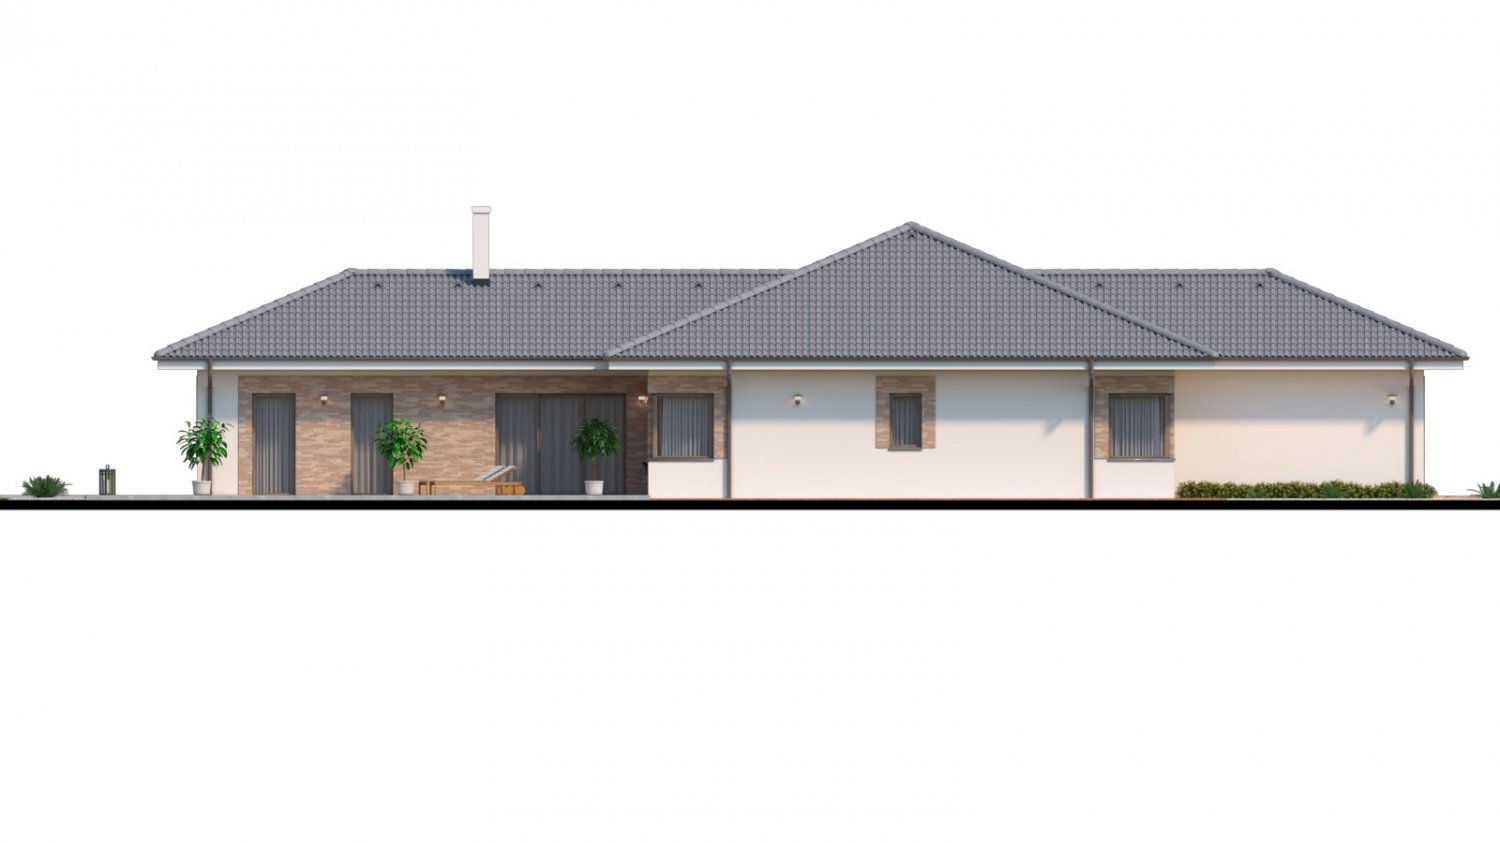 Zrkadlový pohľad 4. - Dům roku 2018 - projekt zděného domu do tvaru L s atriem, dvojgaráží a možností přistavět navíc 2 pokoje.